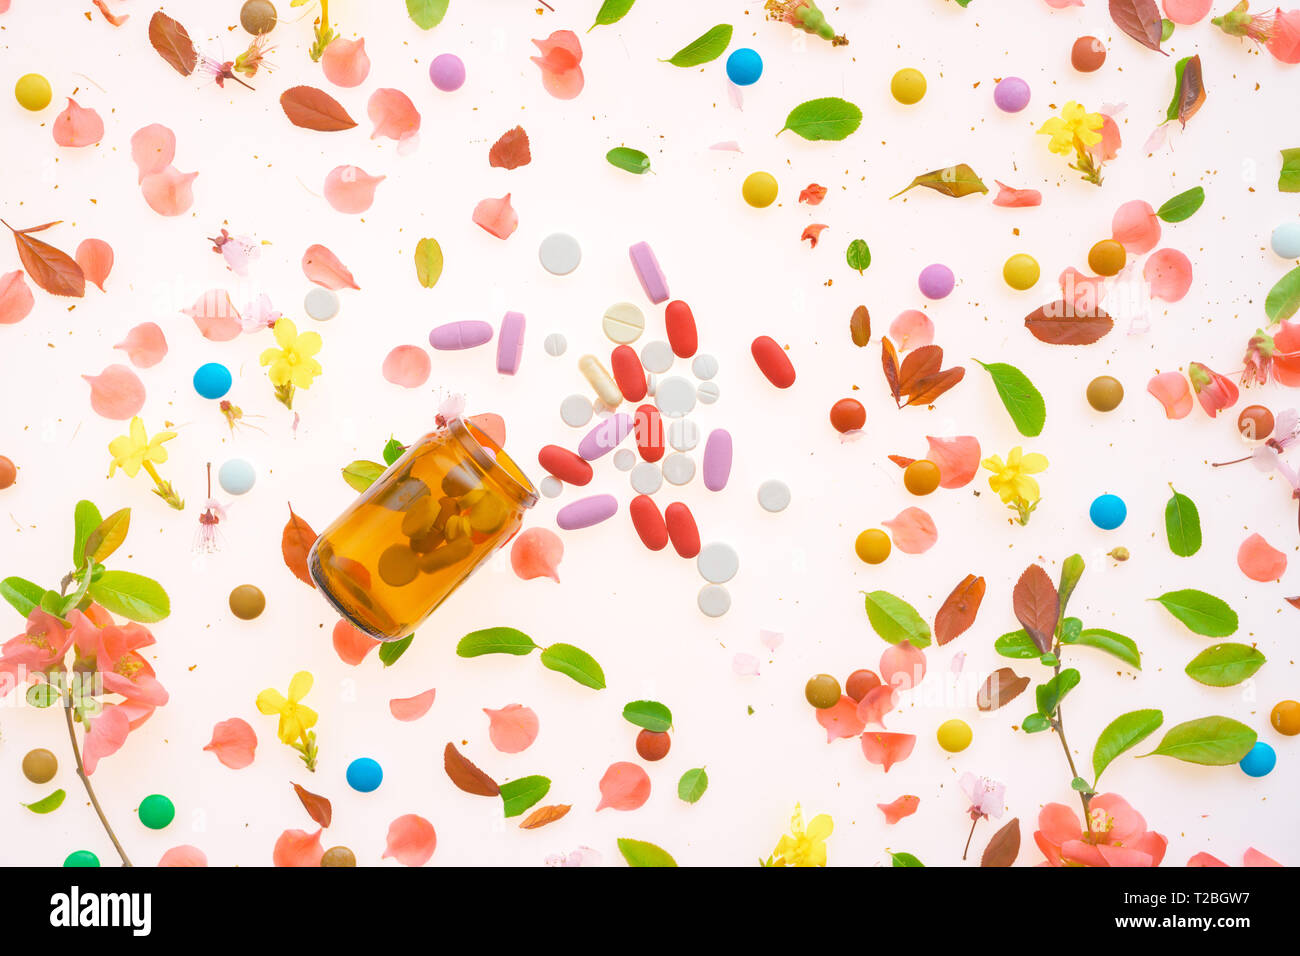 Drogues récréatives télévision conceptuel jeter Vue de dessus de divers médicaments sur fond coloré Banque D'Images